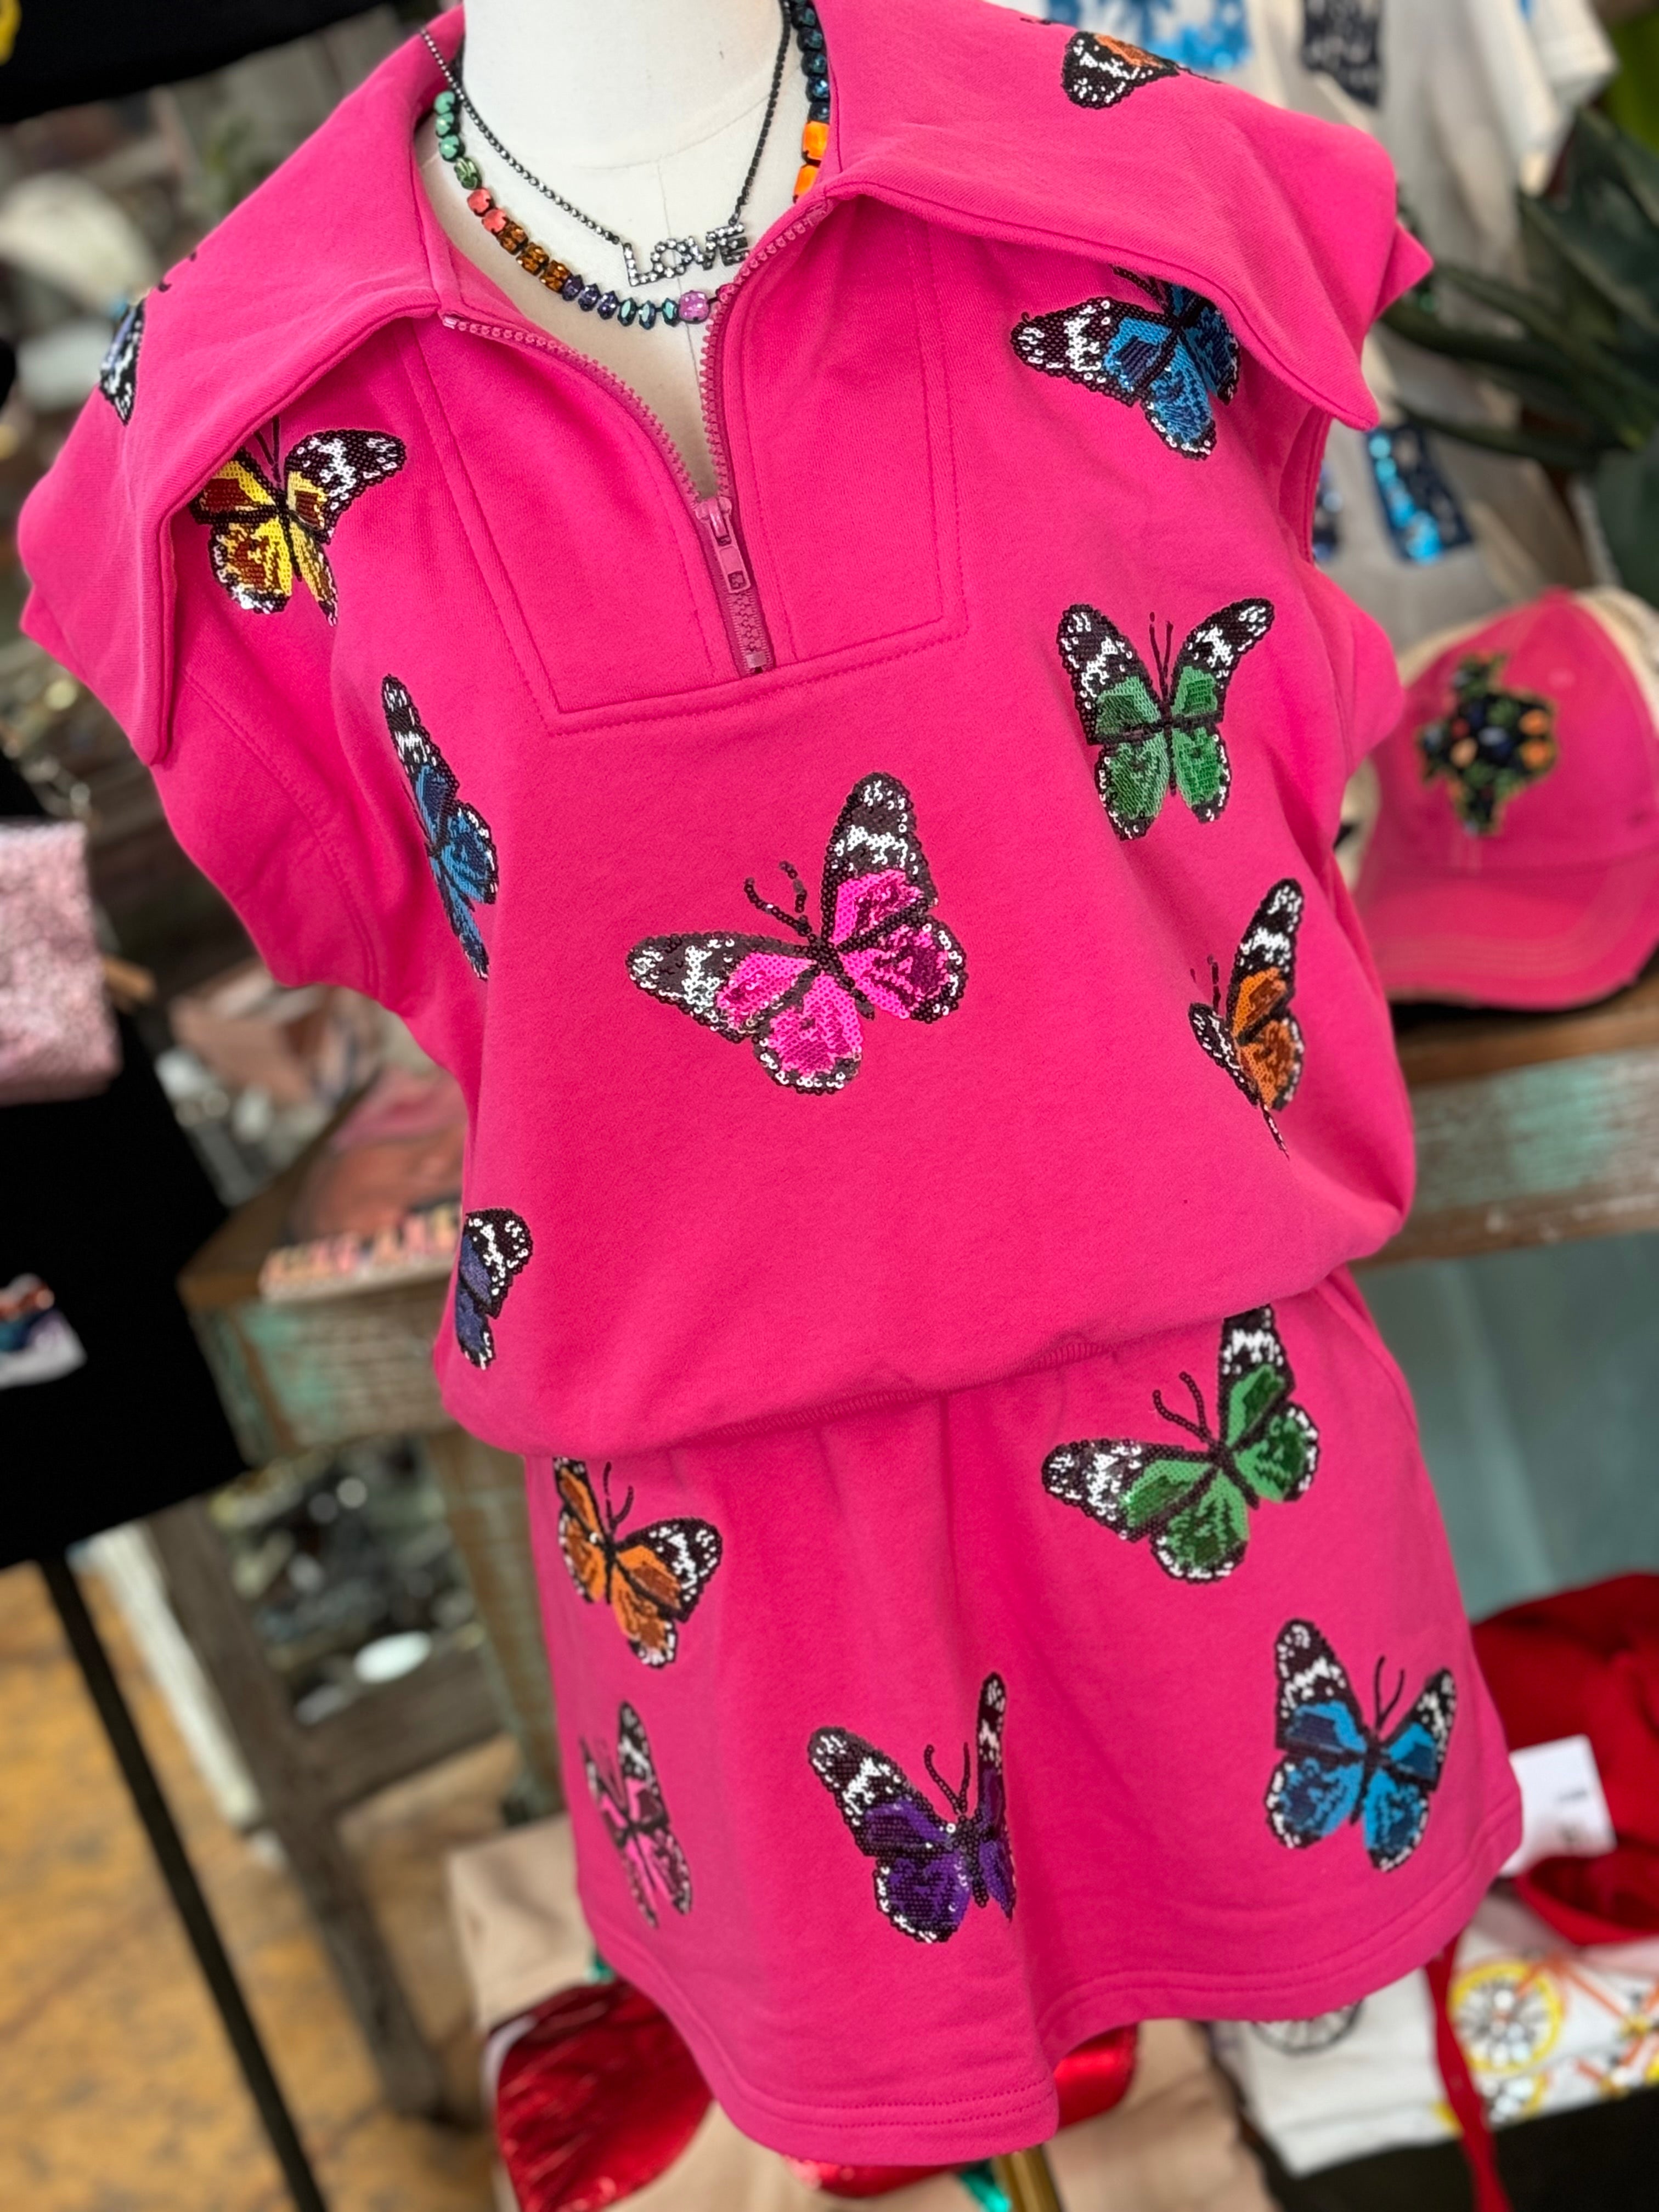 Hot Pink Butterfly Top & Skort